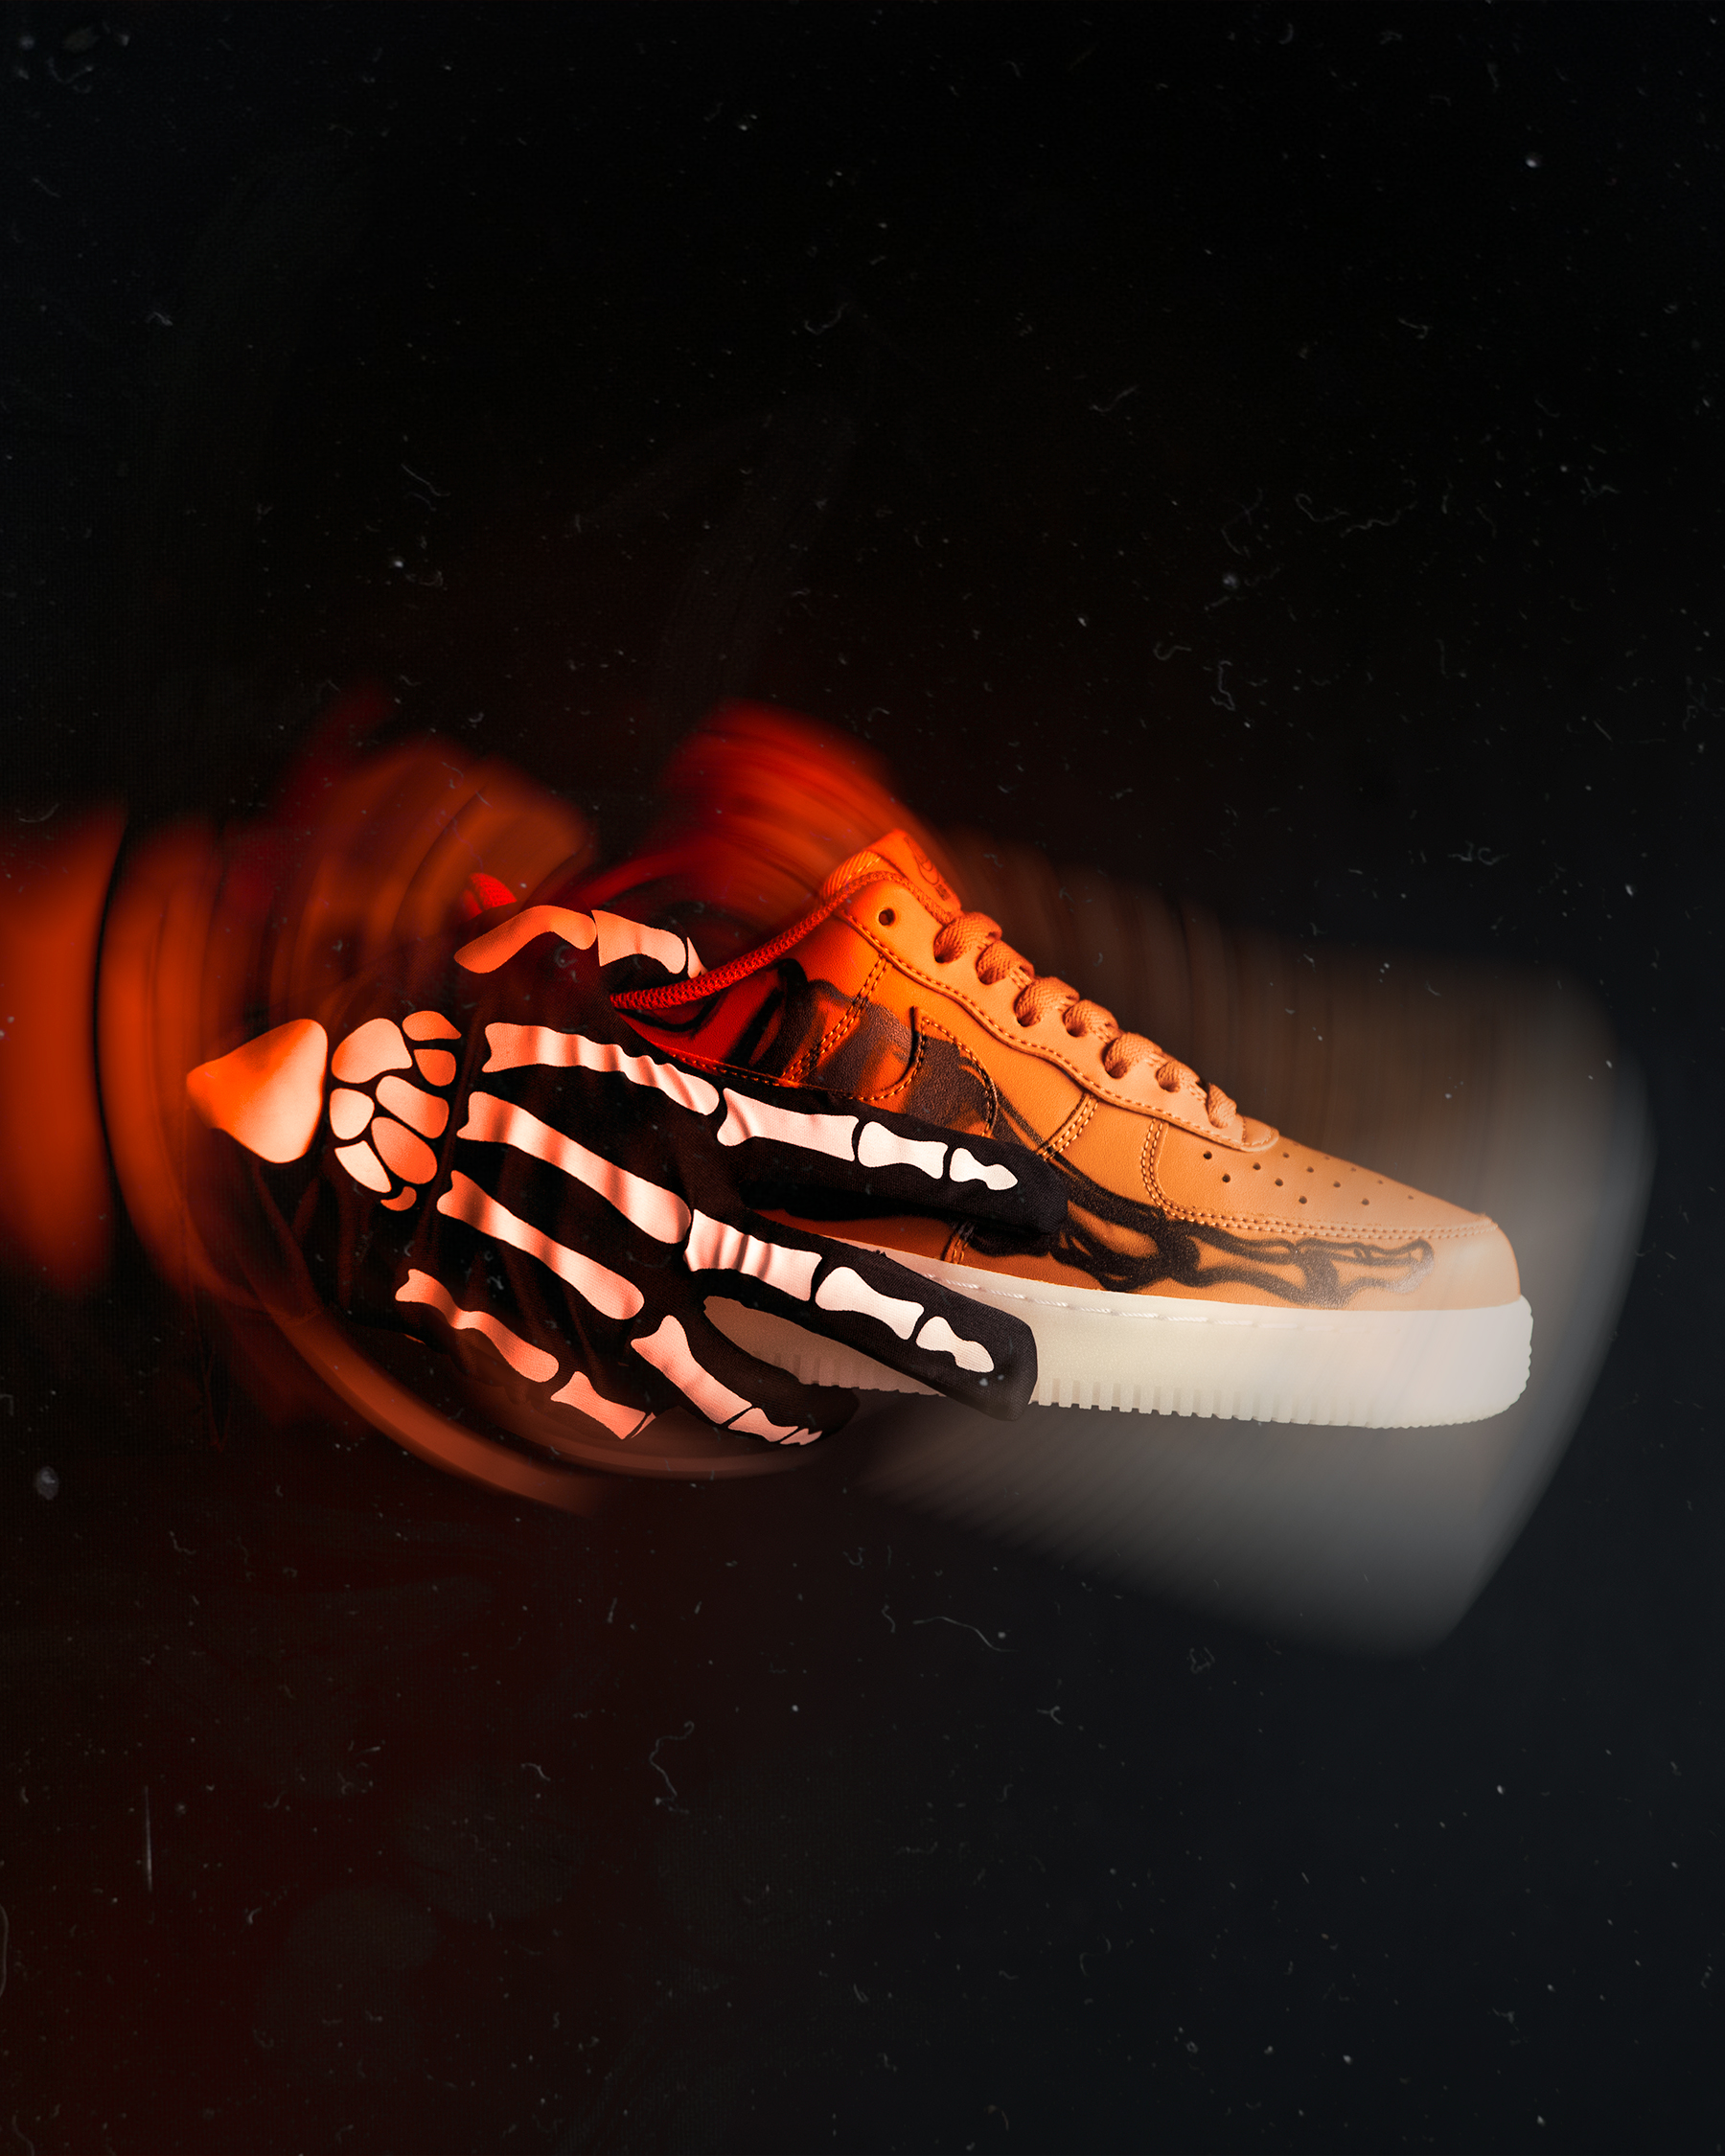 ナイキ エア フォース 1 オレンジ スケルトン ハロウィン 2020年 Nike Air Force 1 Orange Skeleton Halloween 2020 image design side